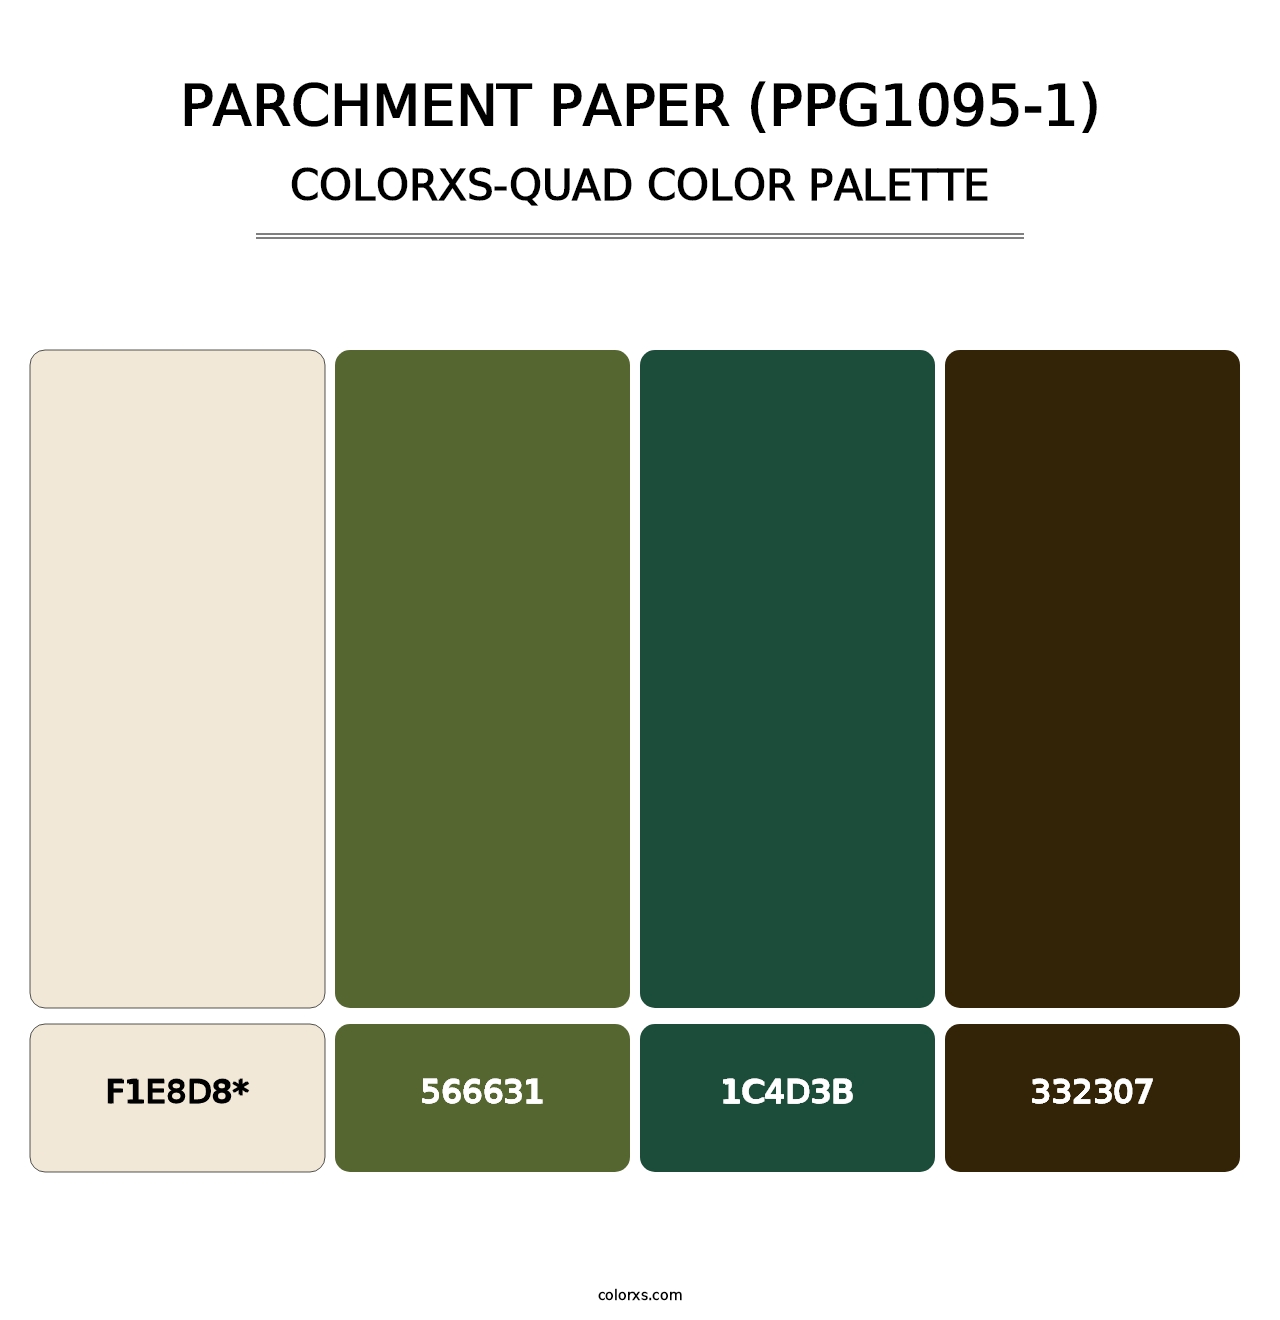 Parchment Paper (PPG1095-1) - Colorxs Quad Palette